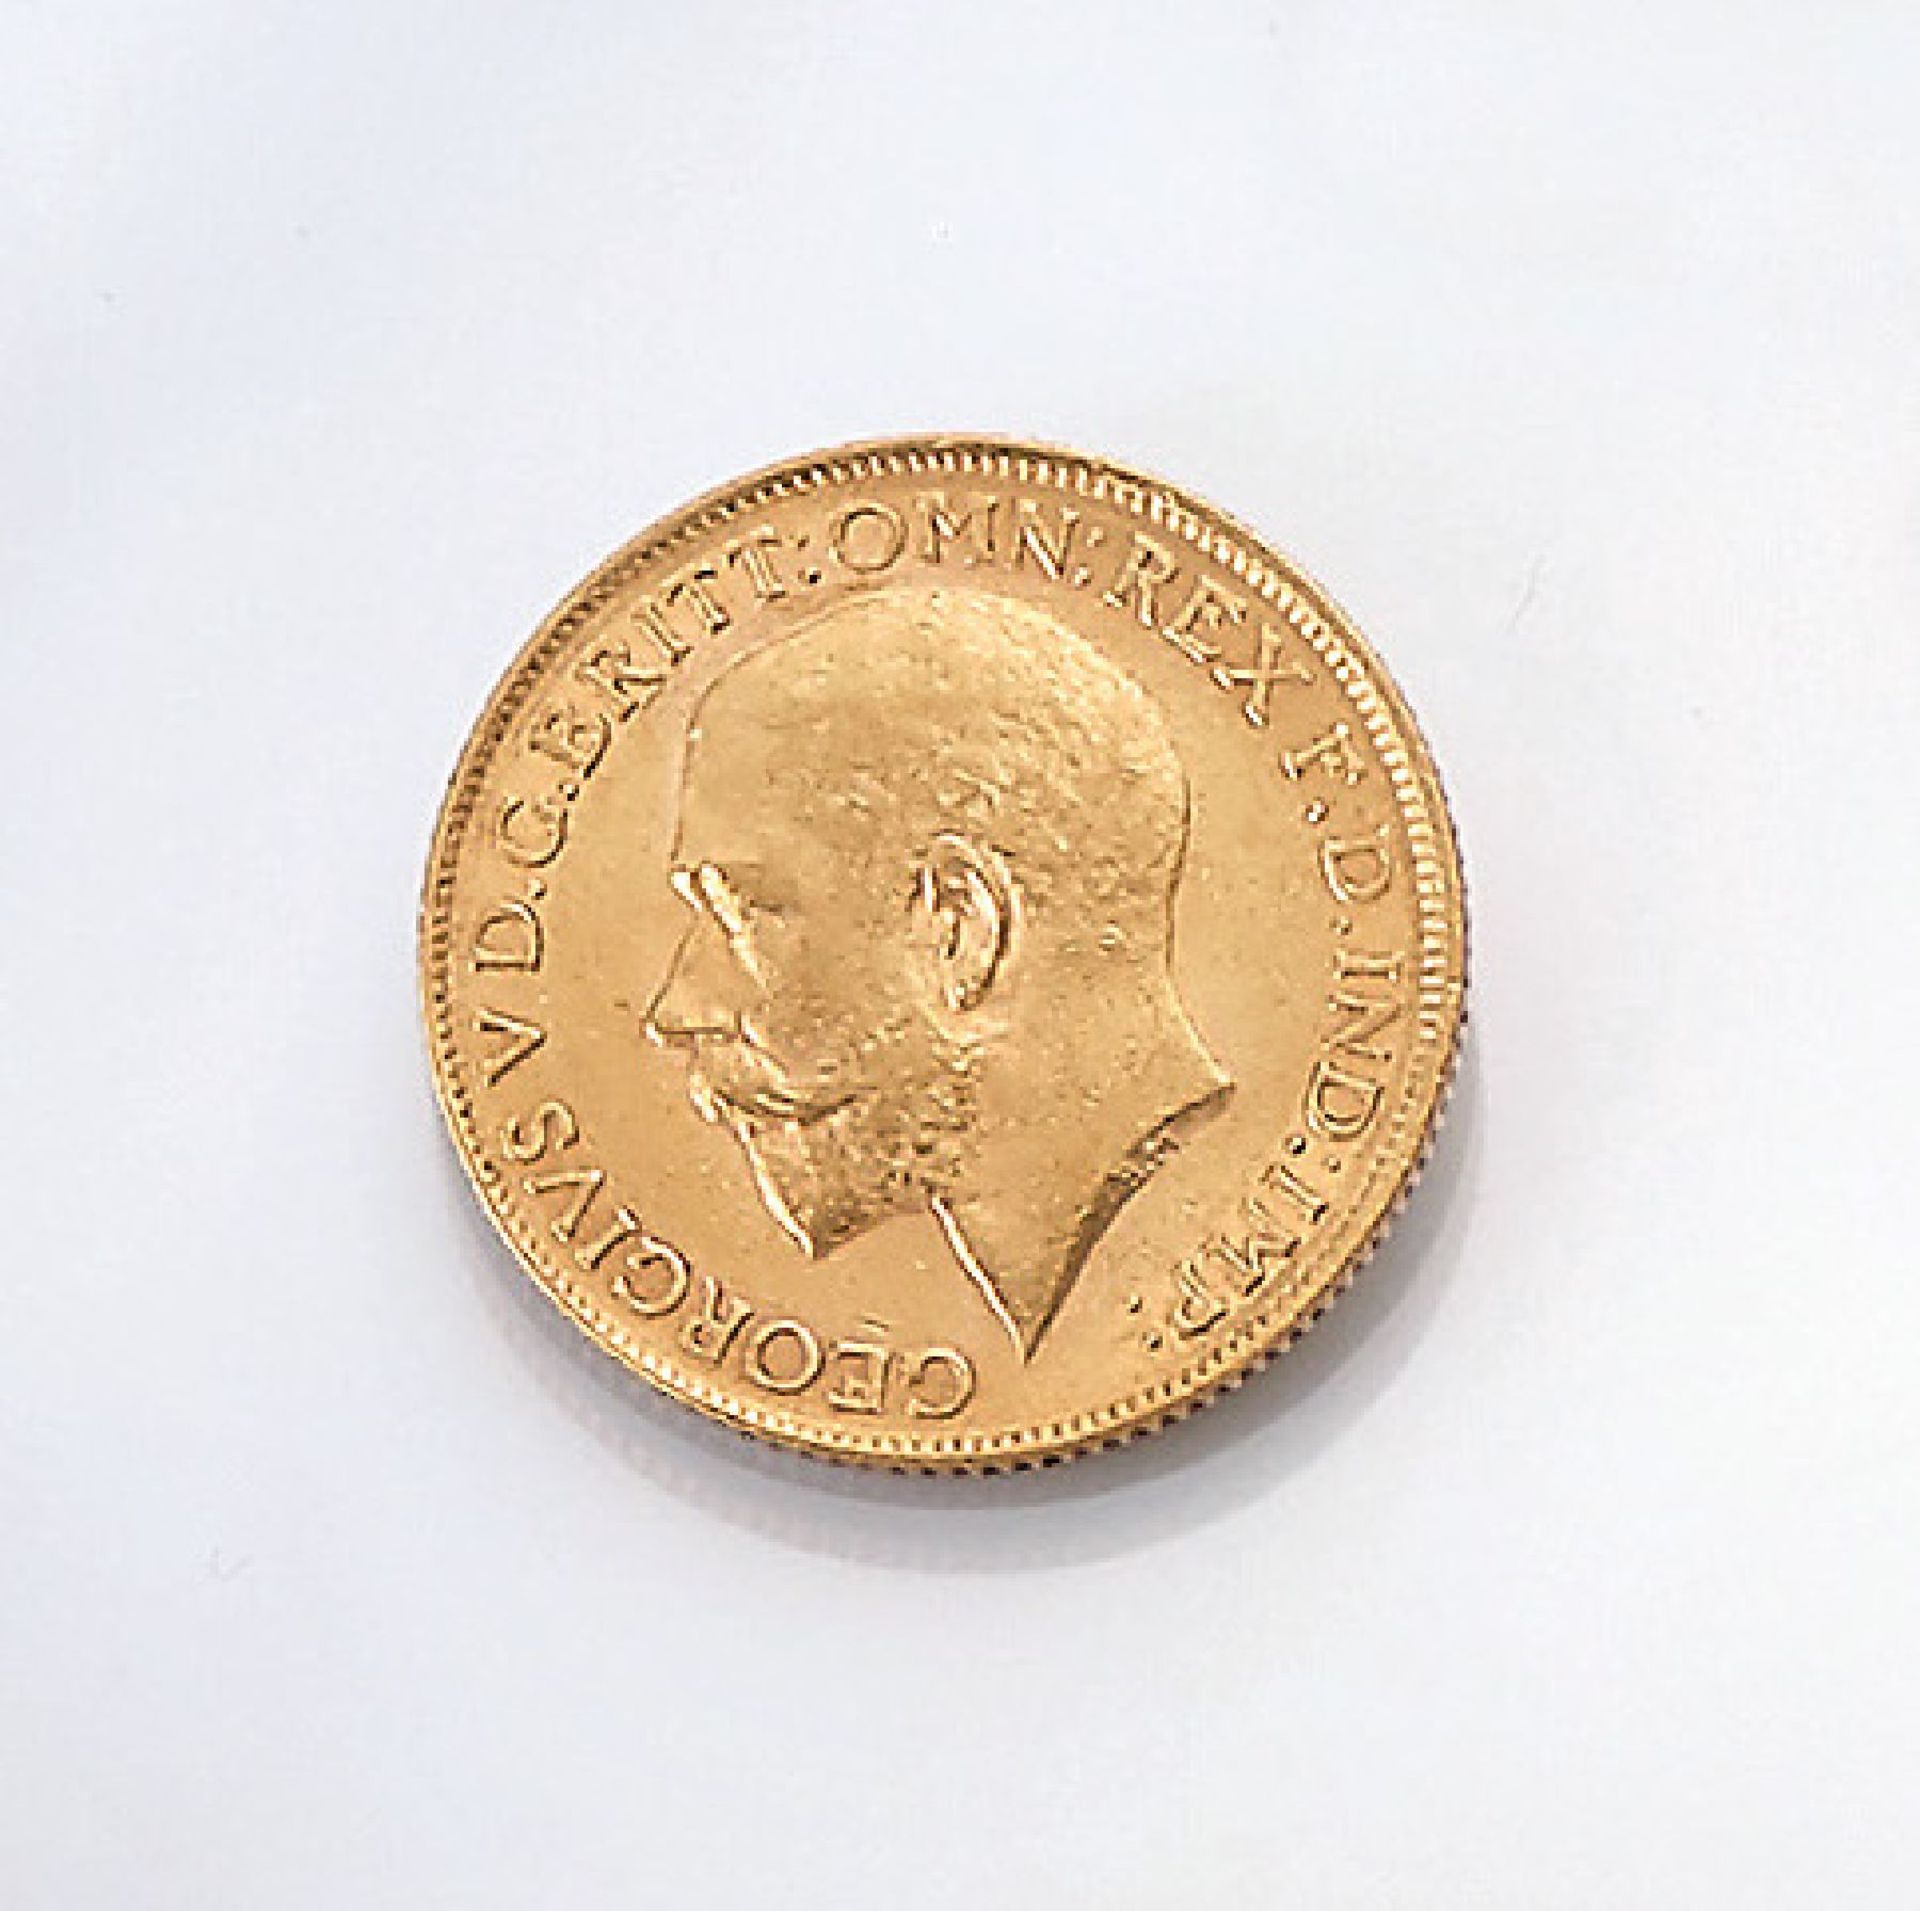 Goldmünze, Sovereign, Großbritannien, 1913, George V., RV: Heiliger Georg hoch zu Ross im Kampf